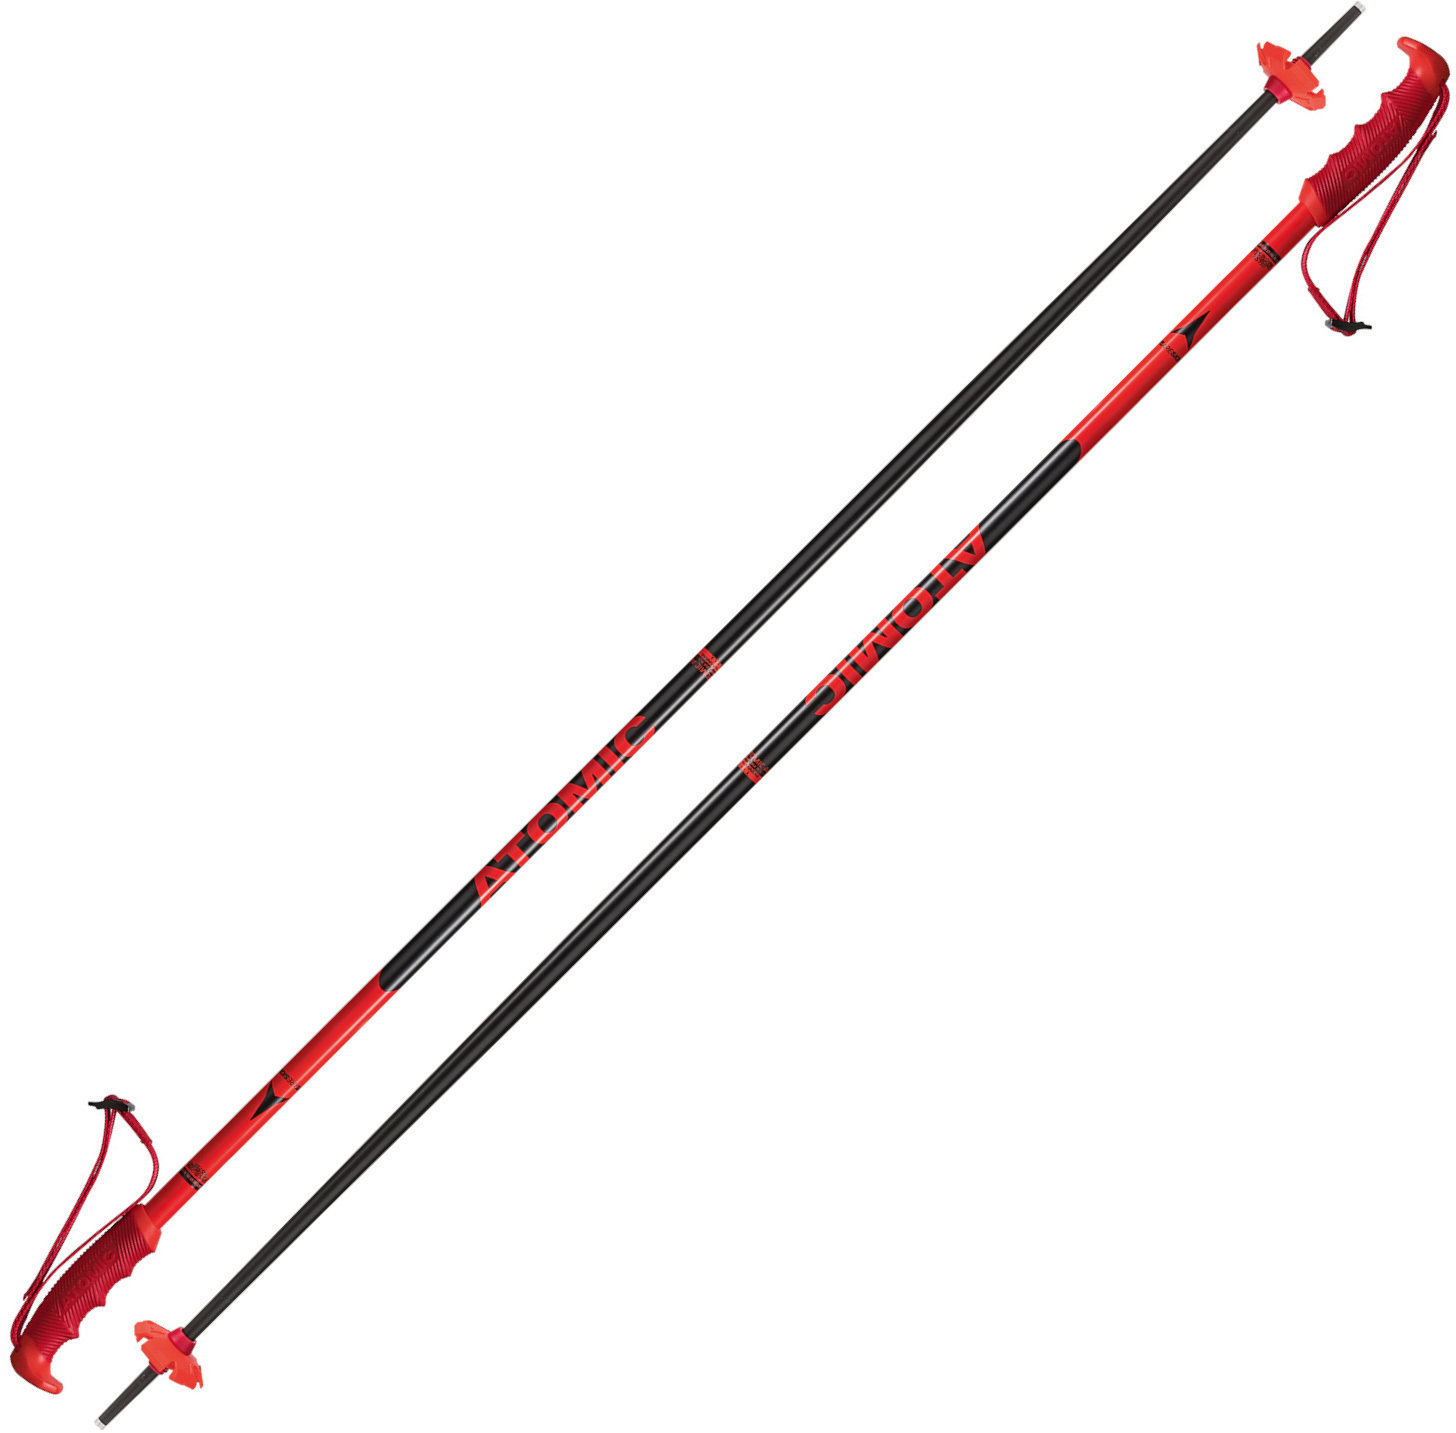 Ski Poles Atomic Redster Red/Black 120 cm Ski Poles